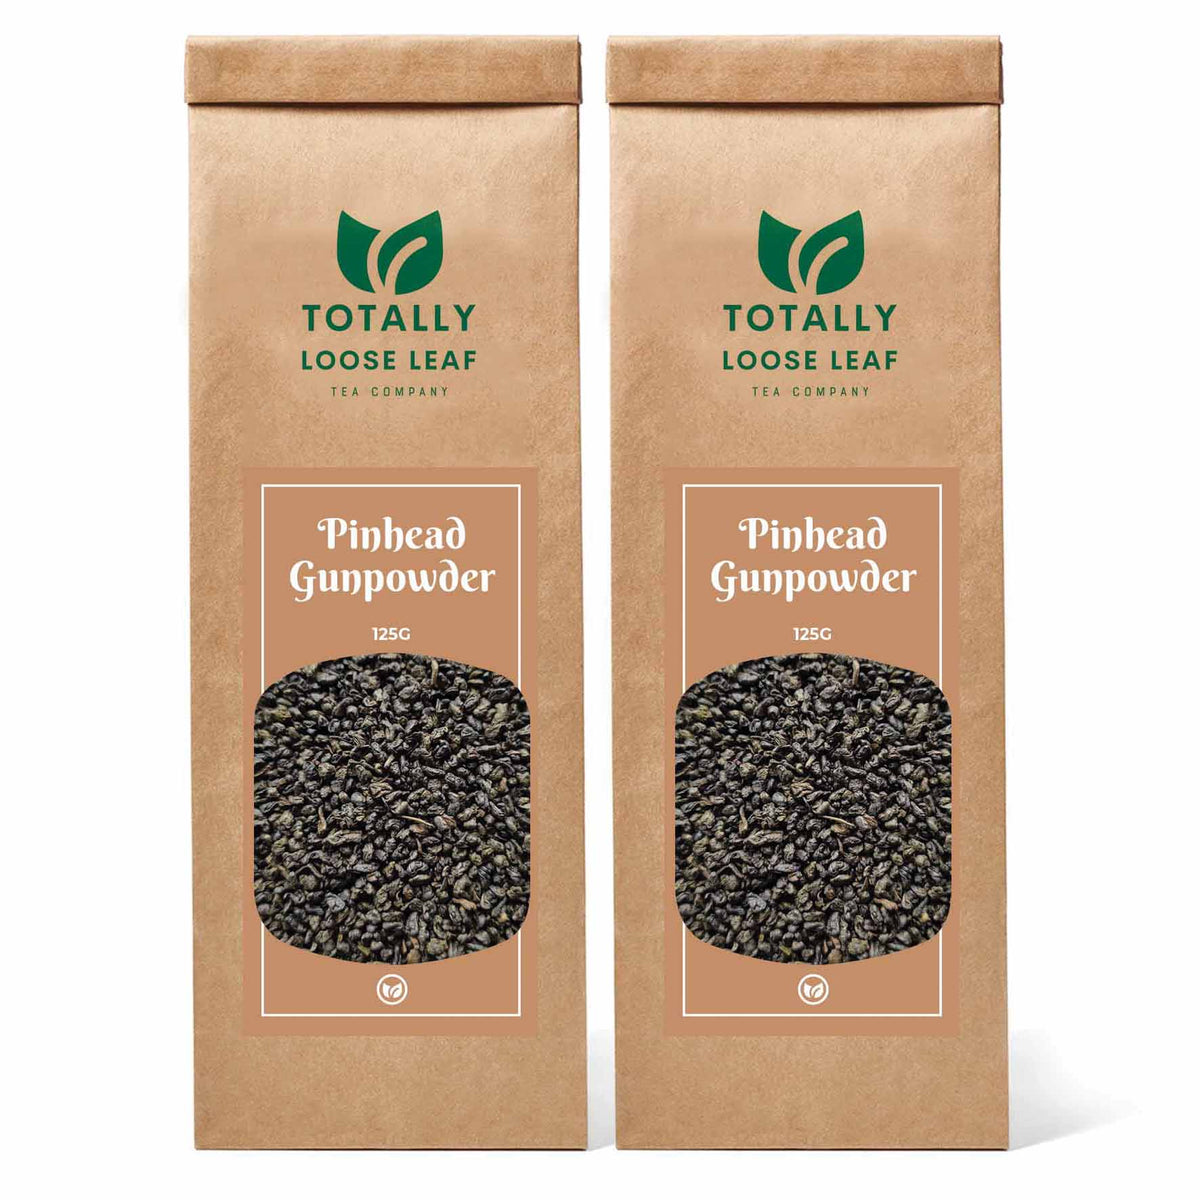 Pinhead Gunpowder Green Loose Leaf Tea - two pouches